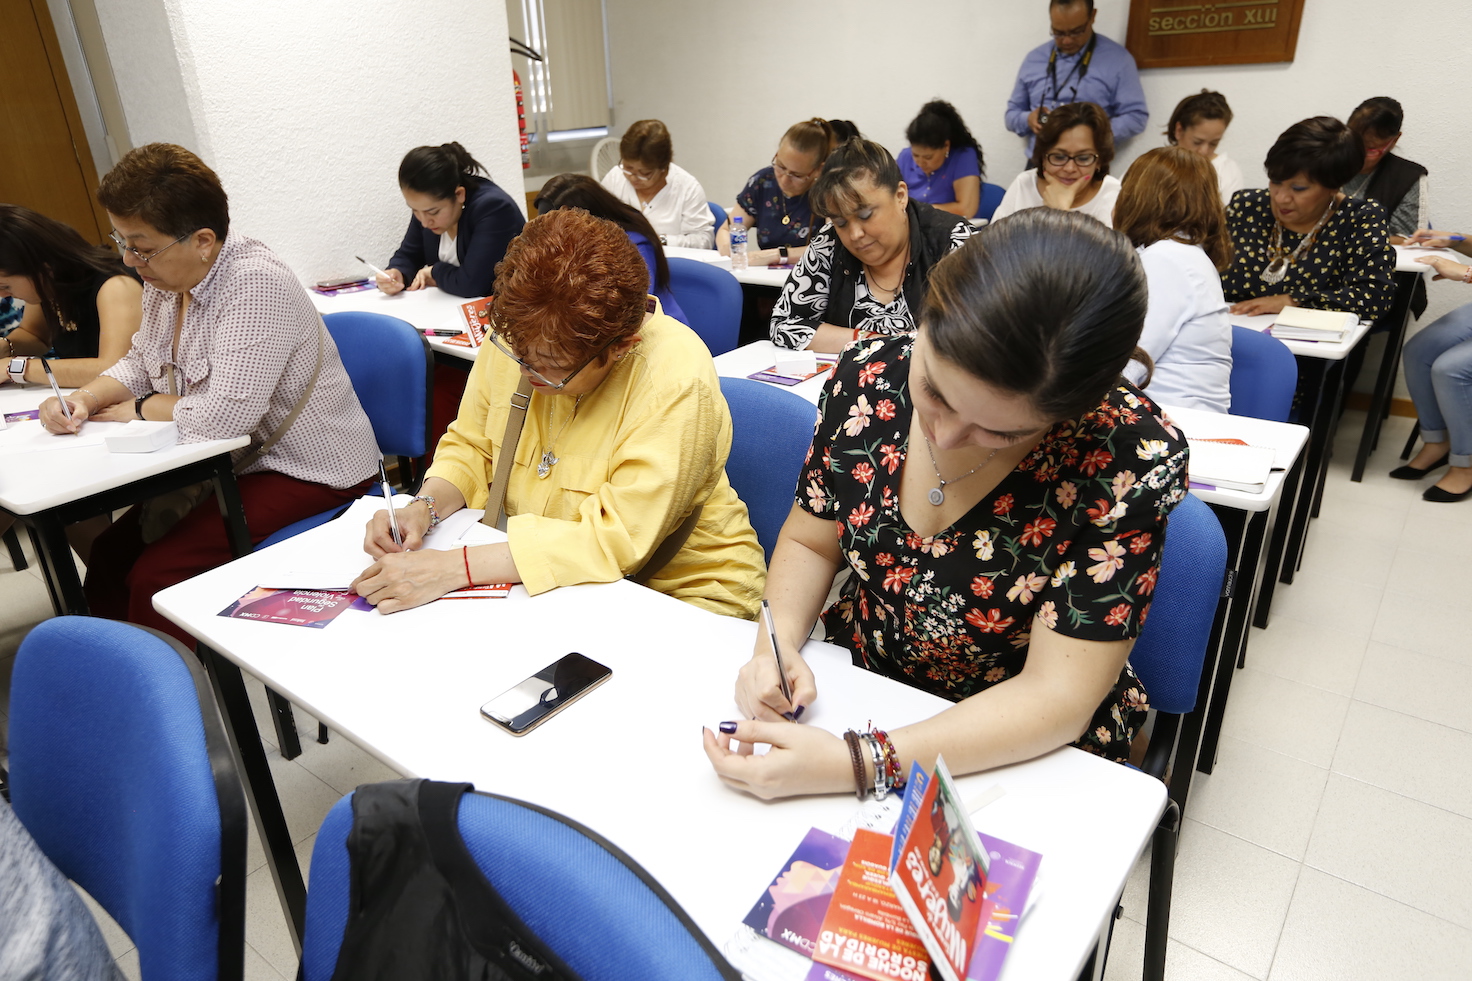 Se realizó el taller "Las mujeres de mi historia" impartido por el personal del instituto a los trabajadores del Fondo en la Ciudad de México